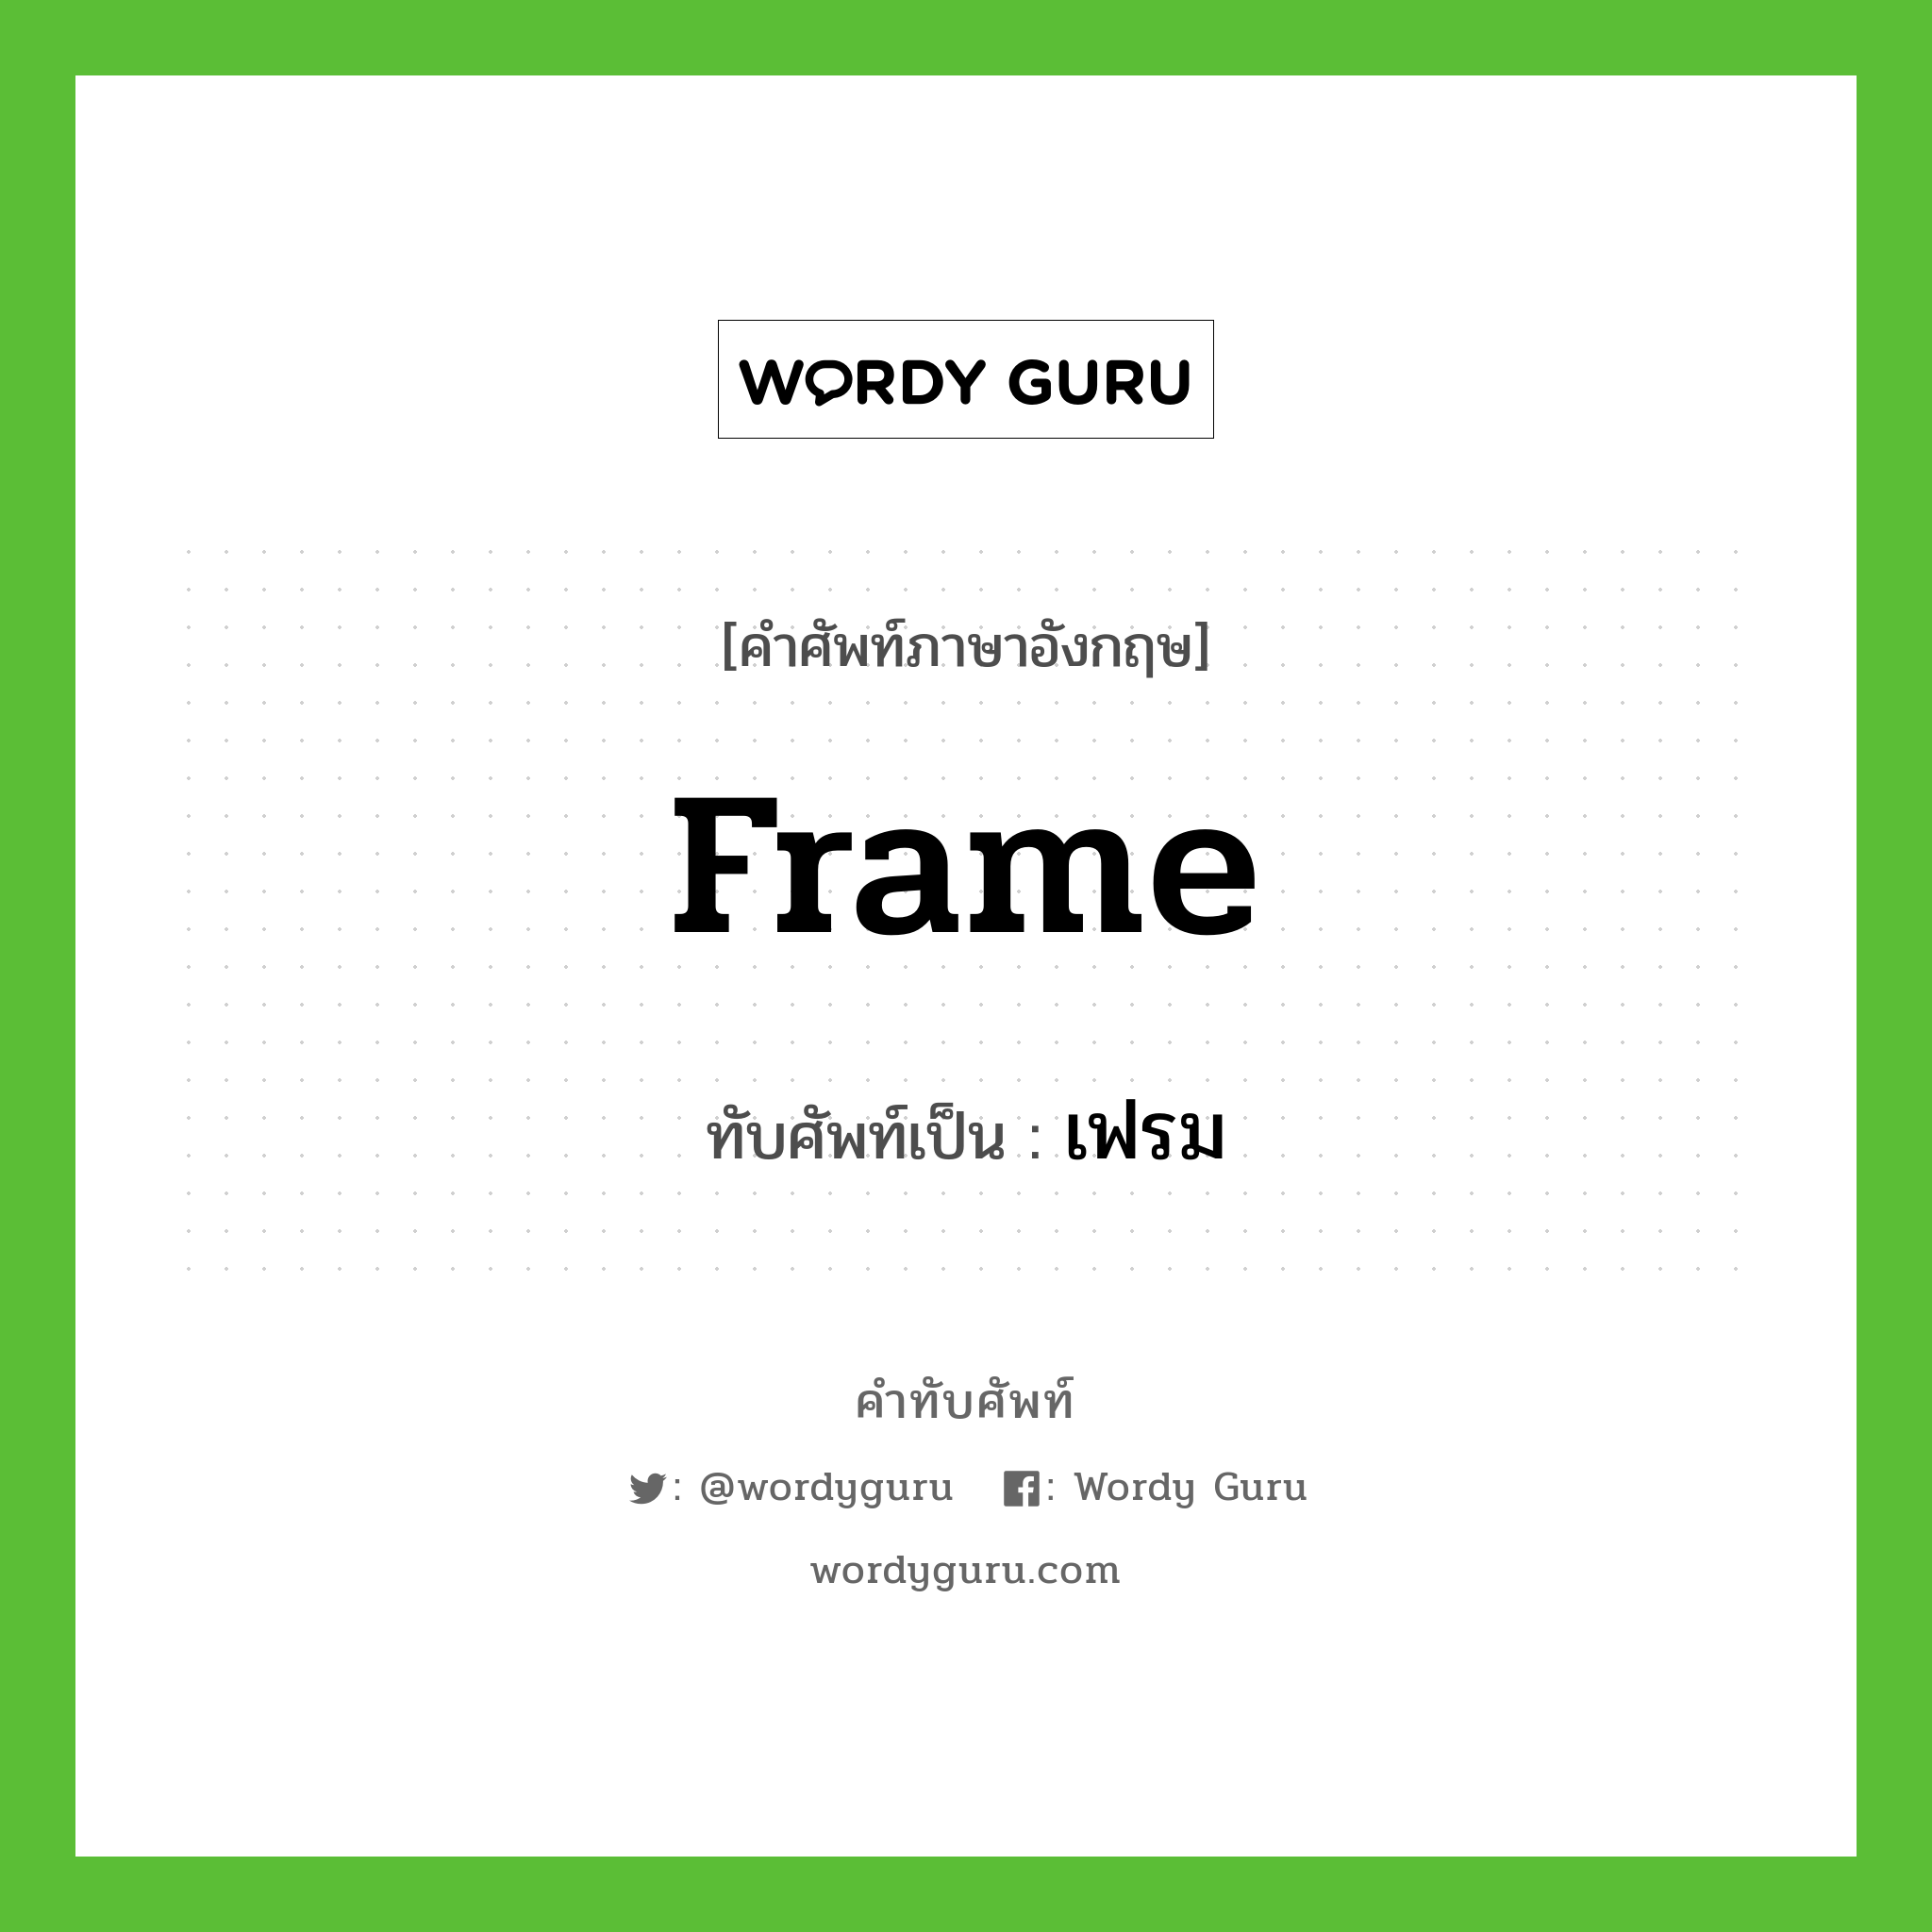 frame เขียนเป็นคำไทยว่าอะไร?, คำศัพท์ภาษาอังกฤษ frame ทับศัพท์เป็น เฟรม